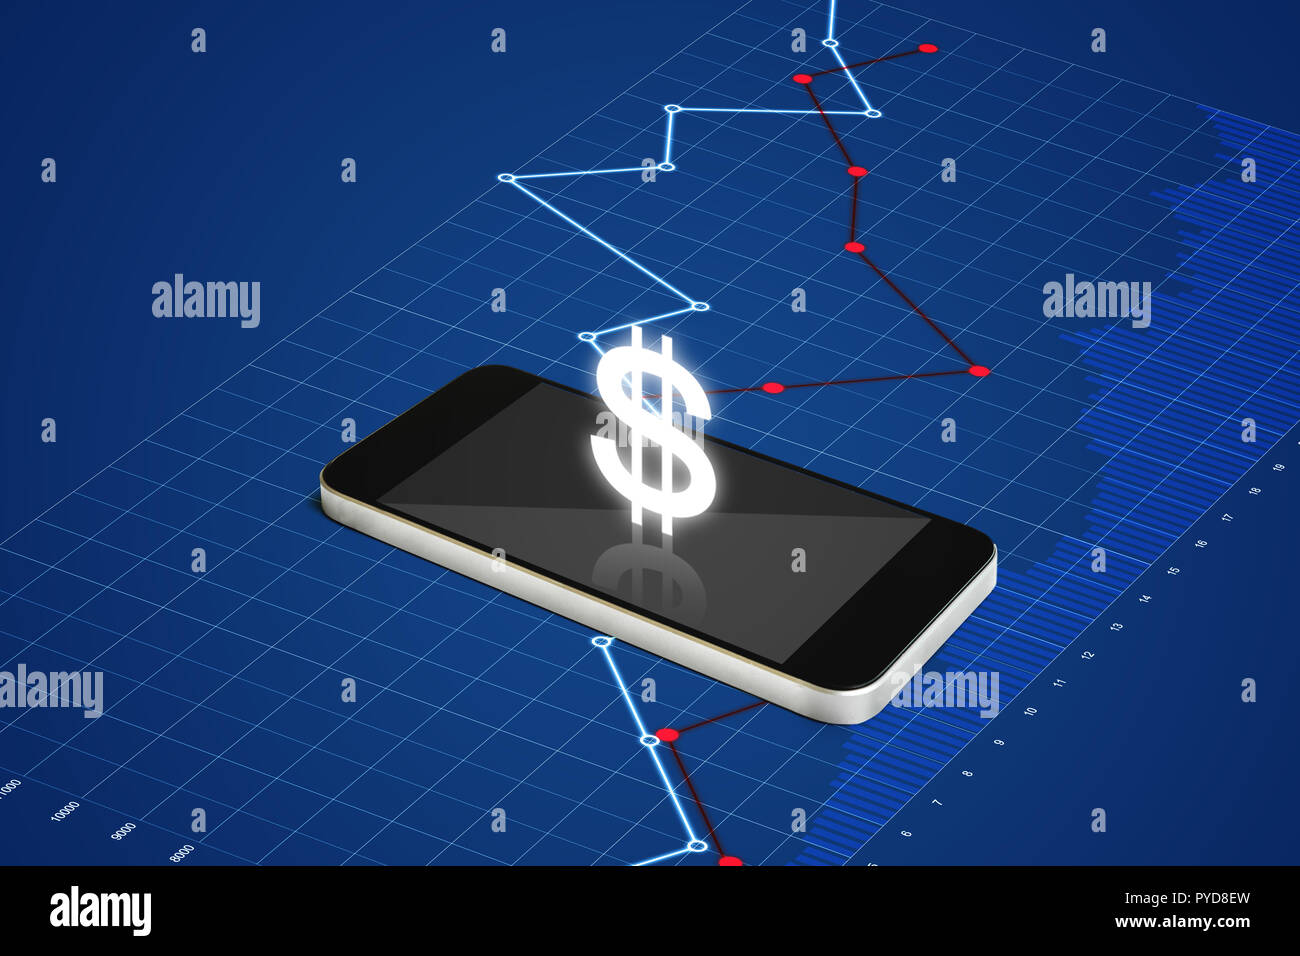 Geld auf Handy, digitale Währung und elektronische Online-banking-Konzept. Smart Phone mit Währung Zeichen und Grafik Stockfoto